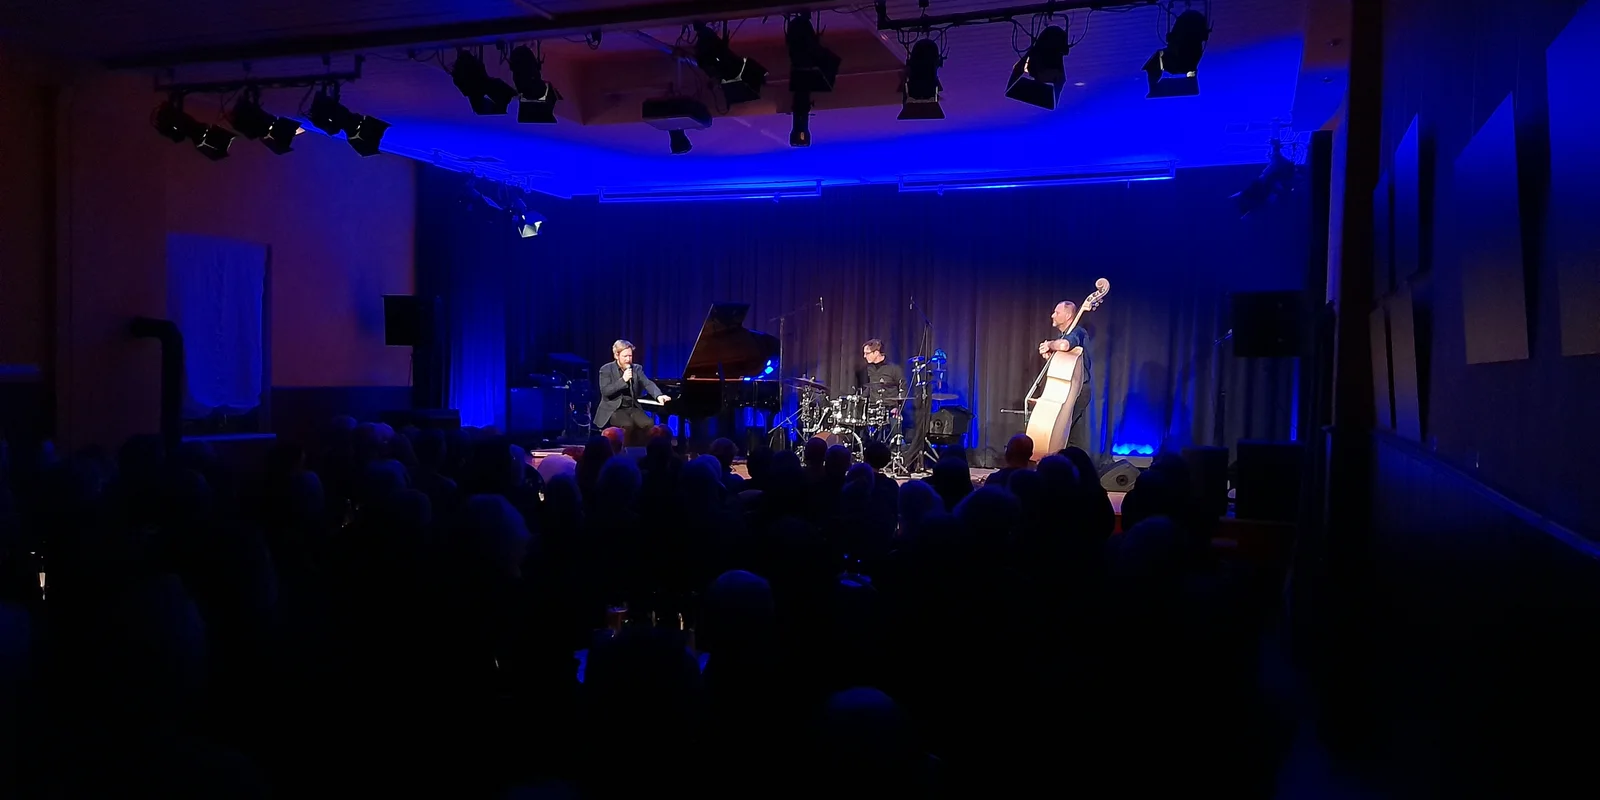 Das Helge Lien Trio, mit Flügel, Schlagzeug und Kontrabass spielt auf der Bühne des Kulturzentrum "Kultur im Esel" im blauen Licht.